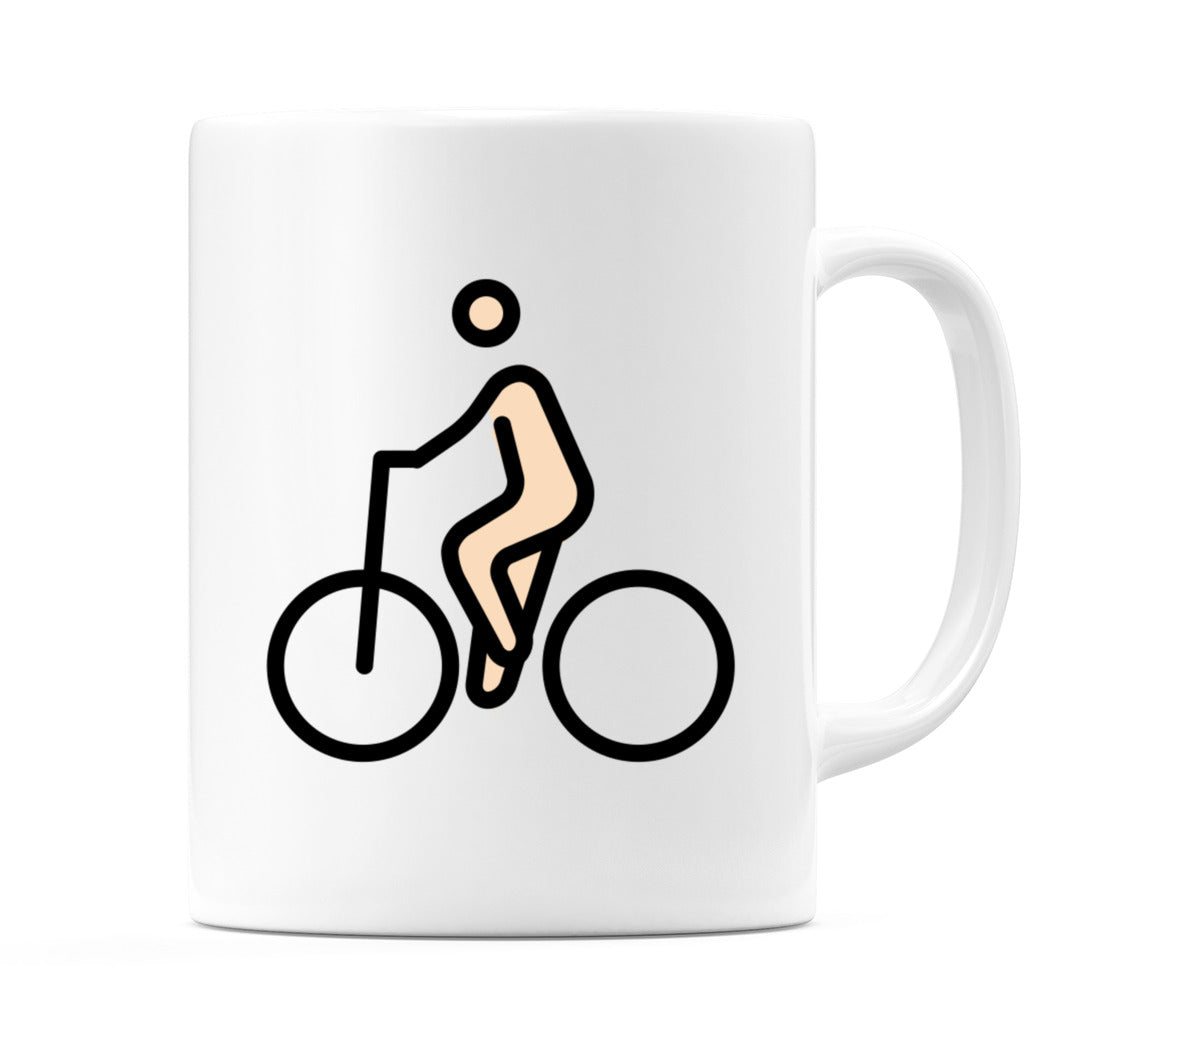 Person Biking: Light Skin Tone Emoji Mug